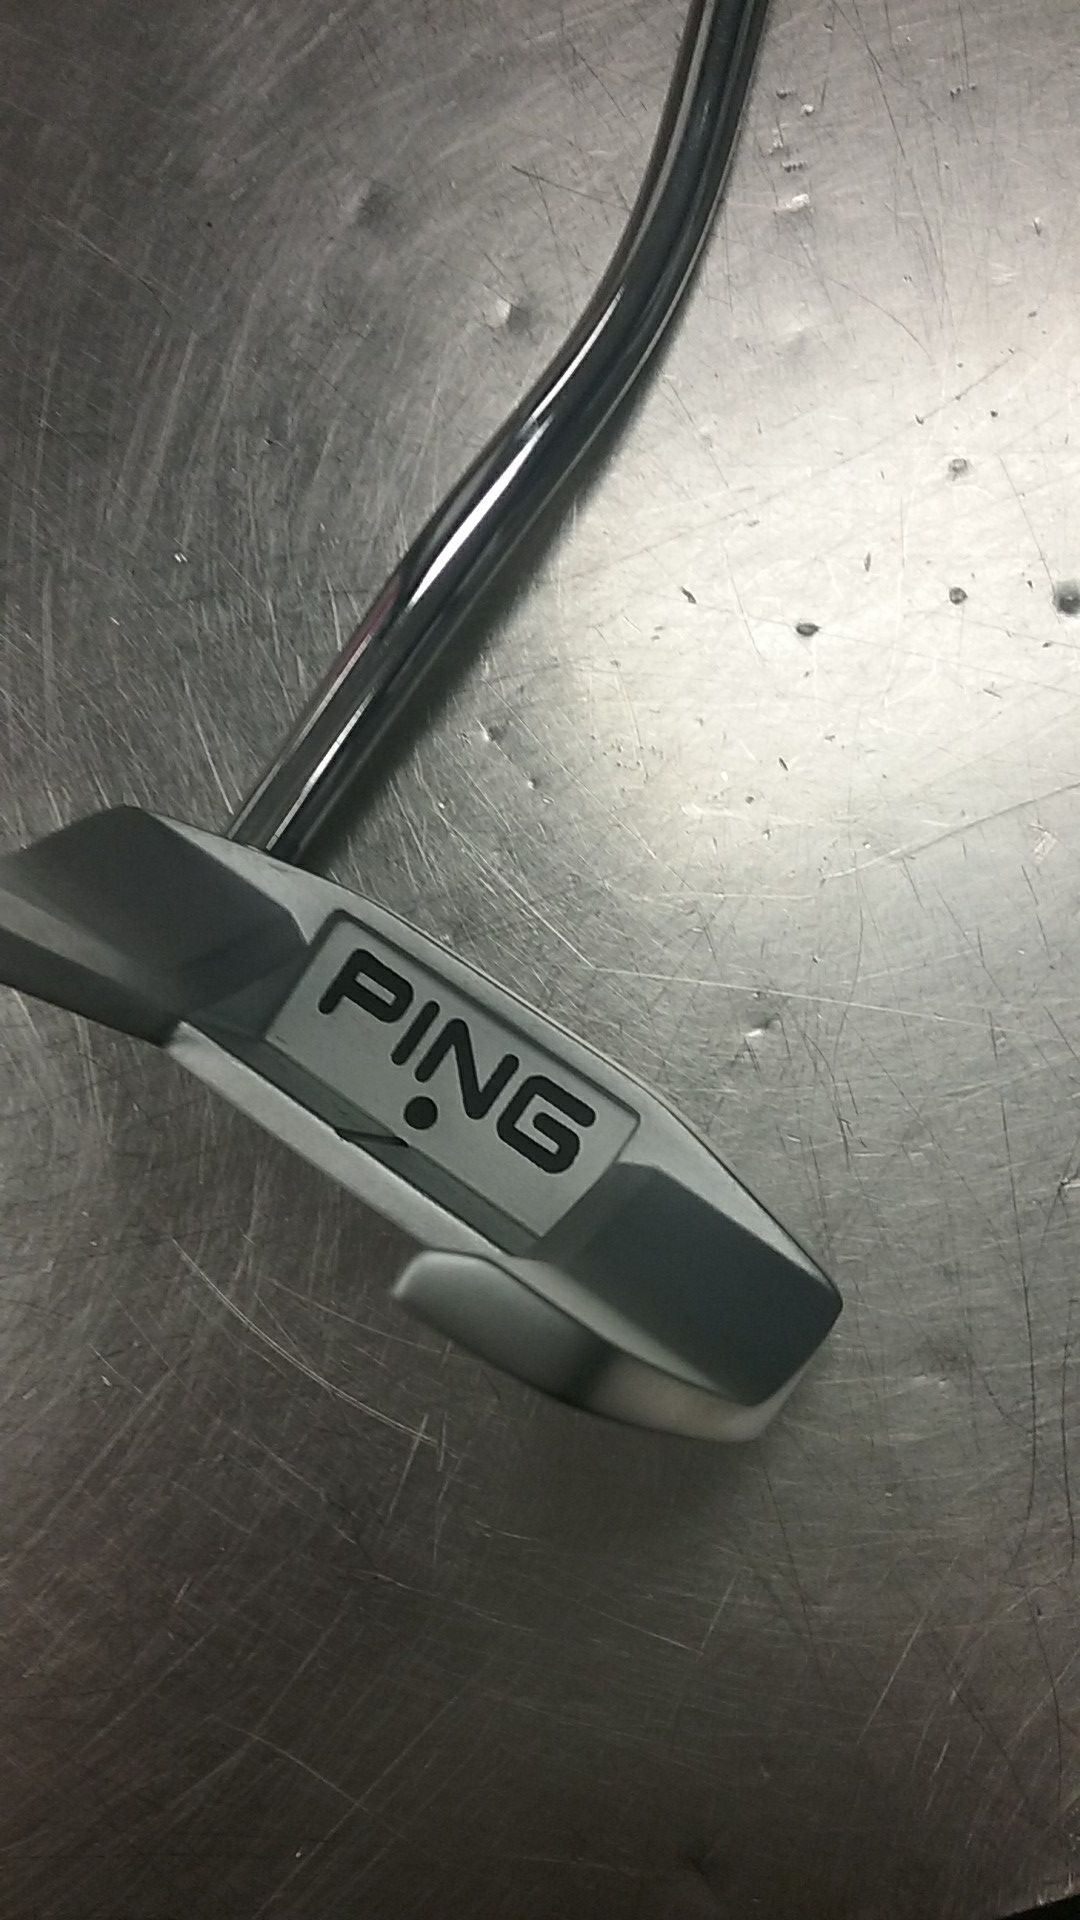 Ping pp60